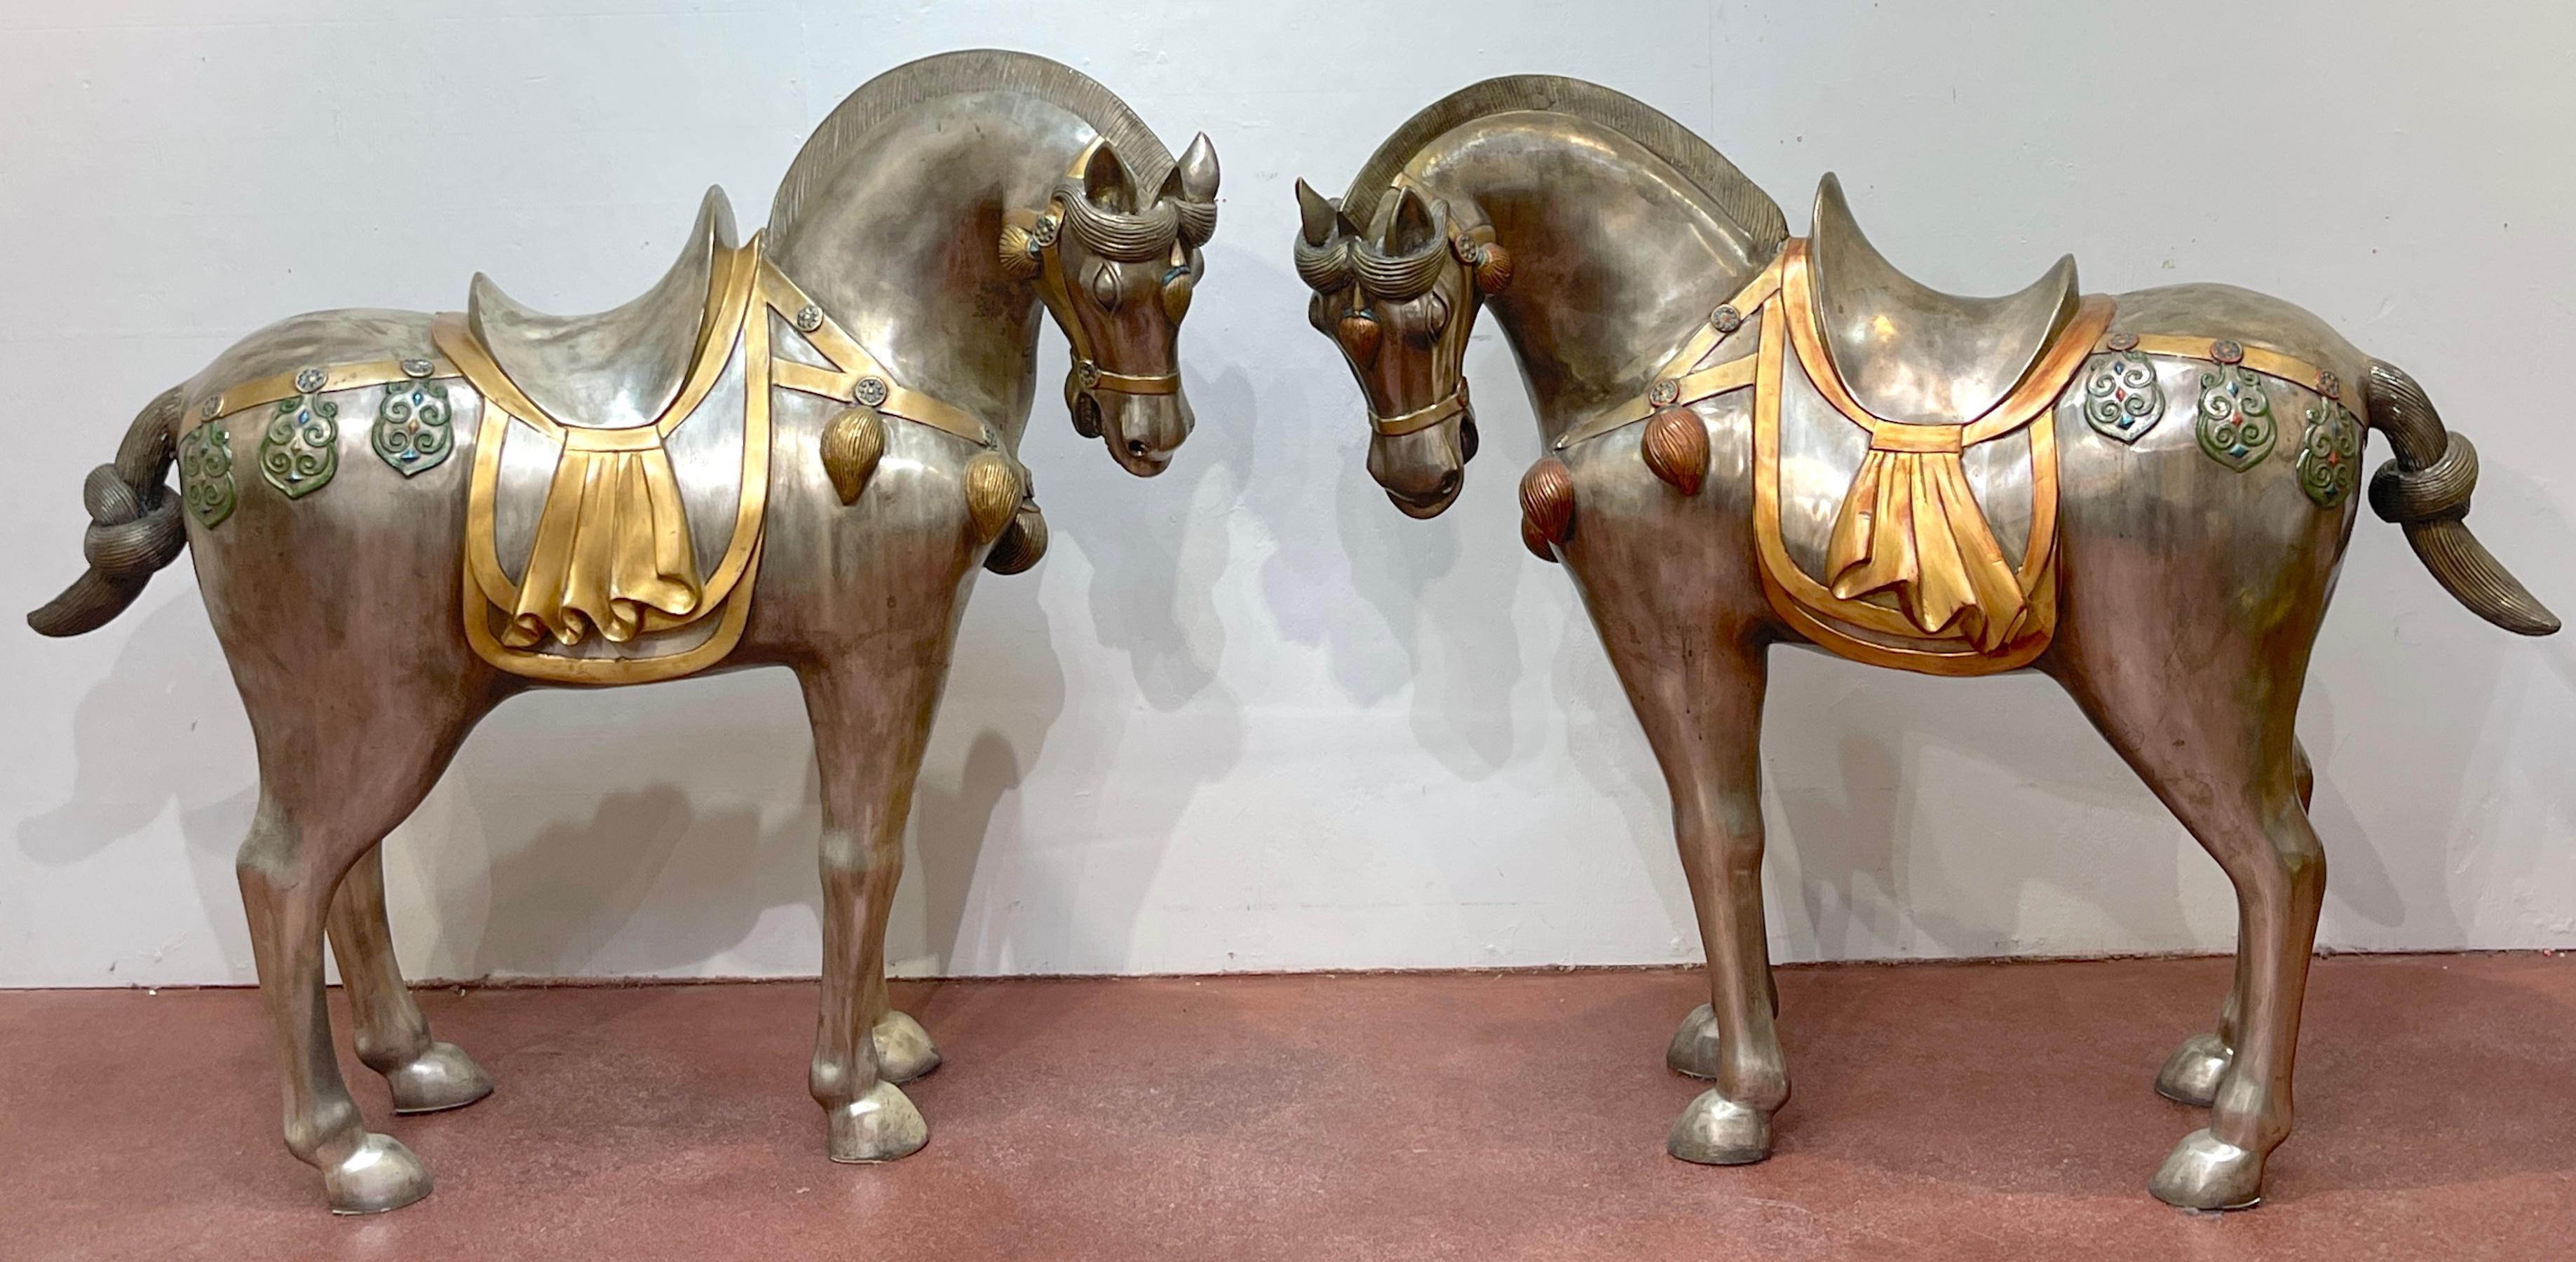 Massives Paar versilberte Bronze und emaillierte Pferde im Tang-Stil aus der Mitte des Jahrhunderts, im Stil von Tony Duquette
Ende des 20. Jahrhunderts

Wir präsentieren einen außergewöhnlichen Fund: ein Paar versilberte Bronze und emaillierte